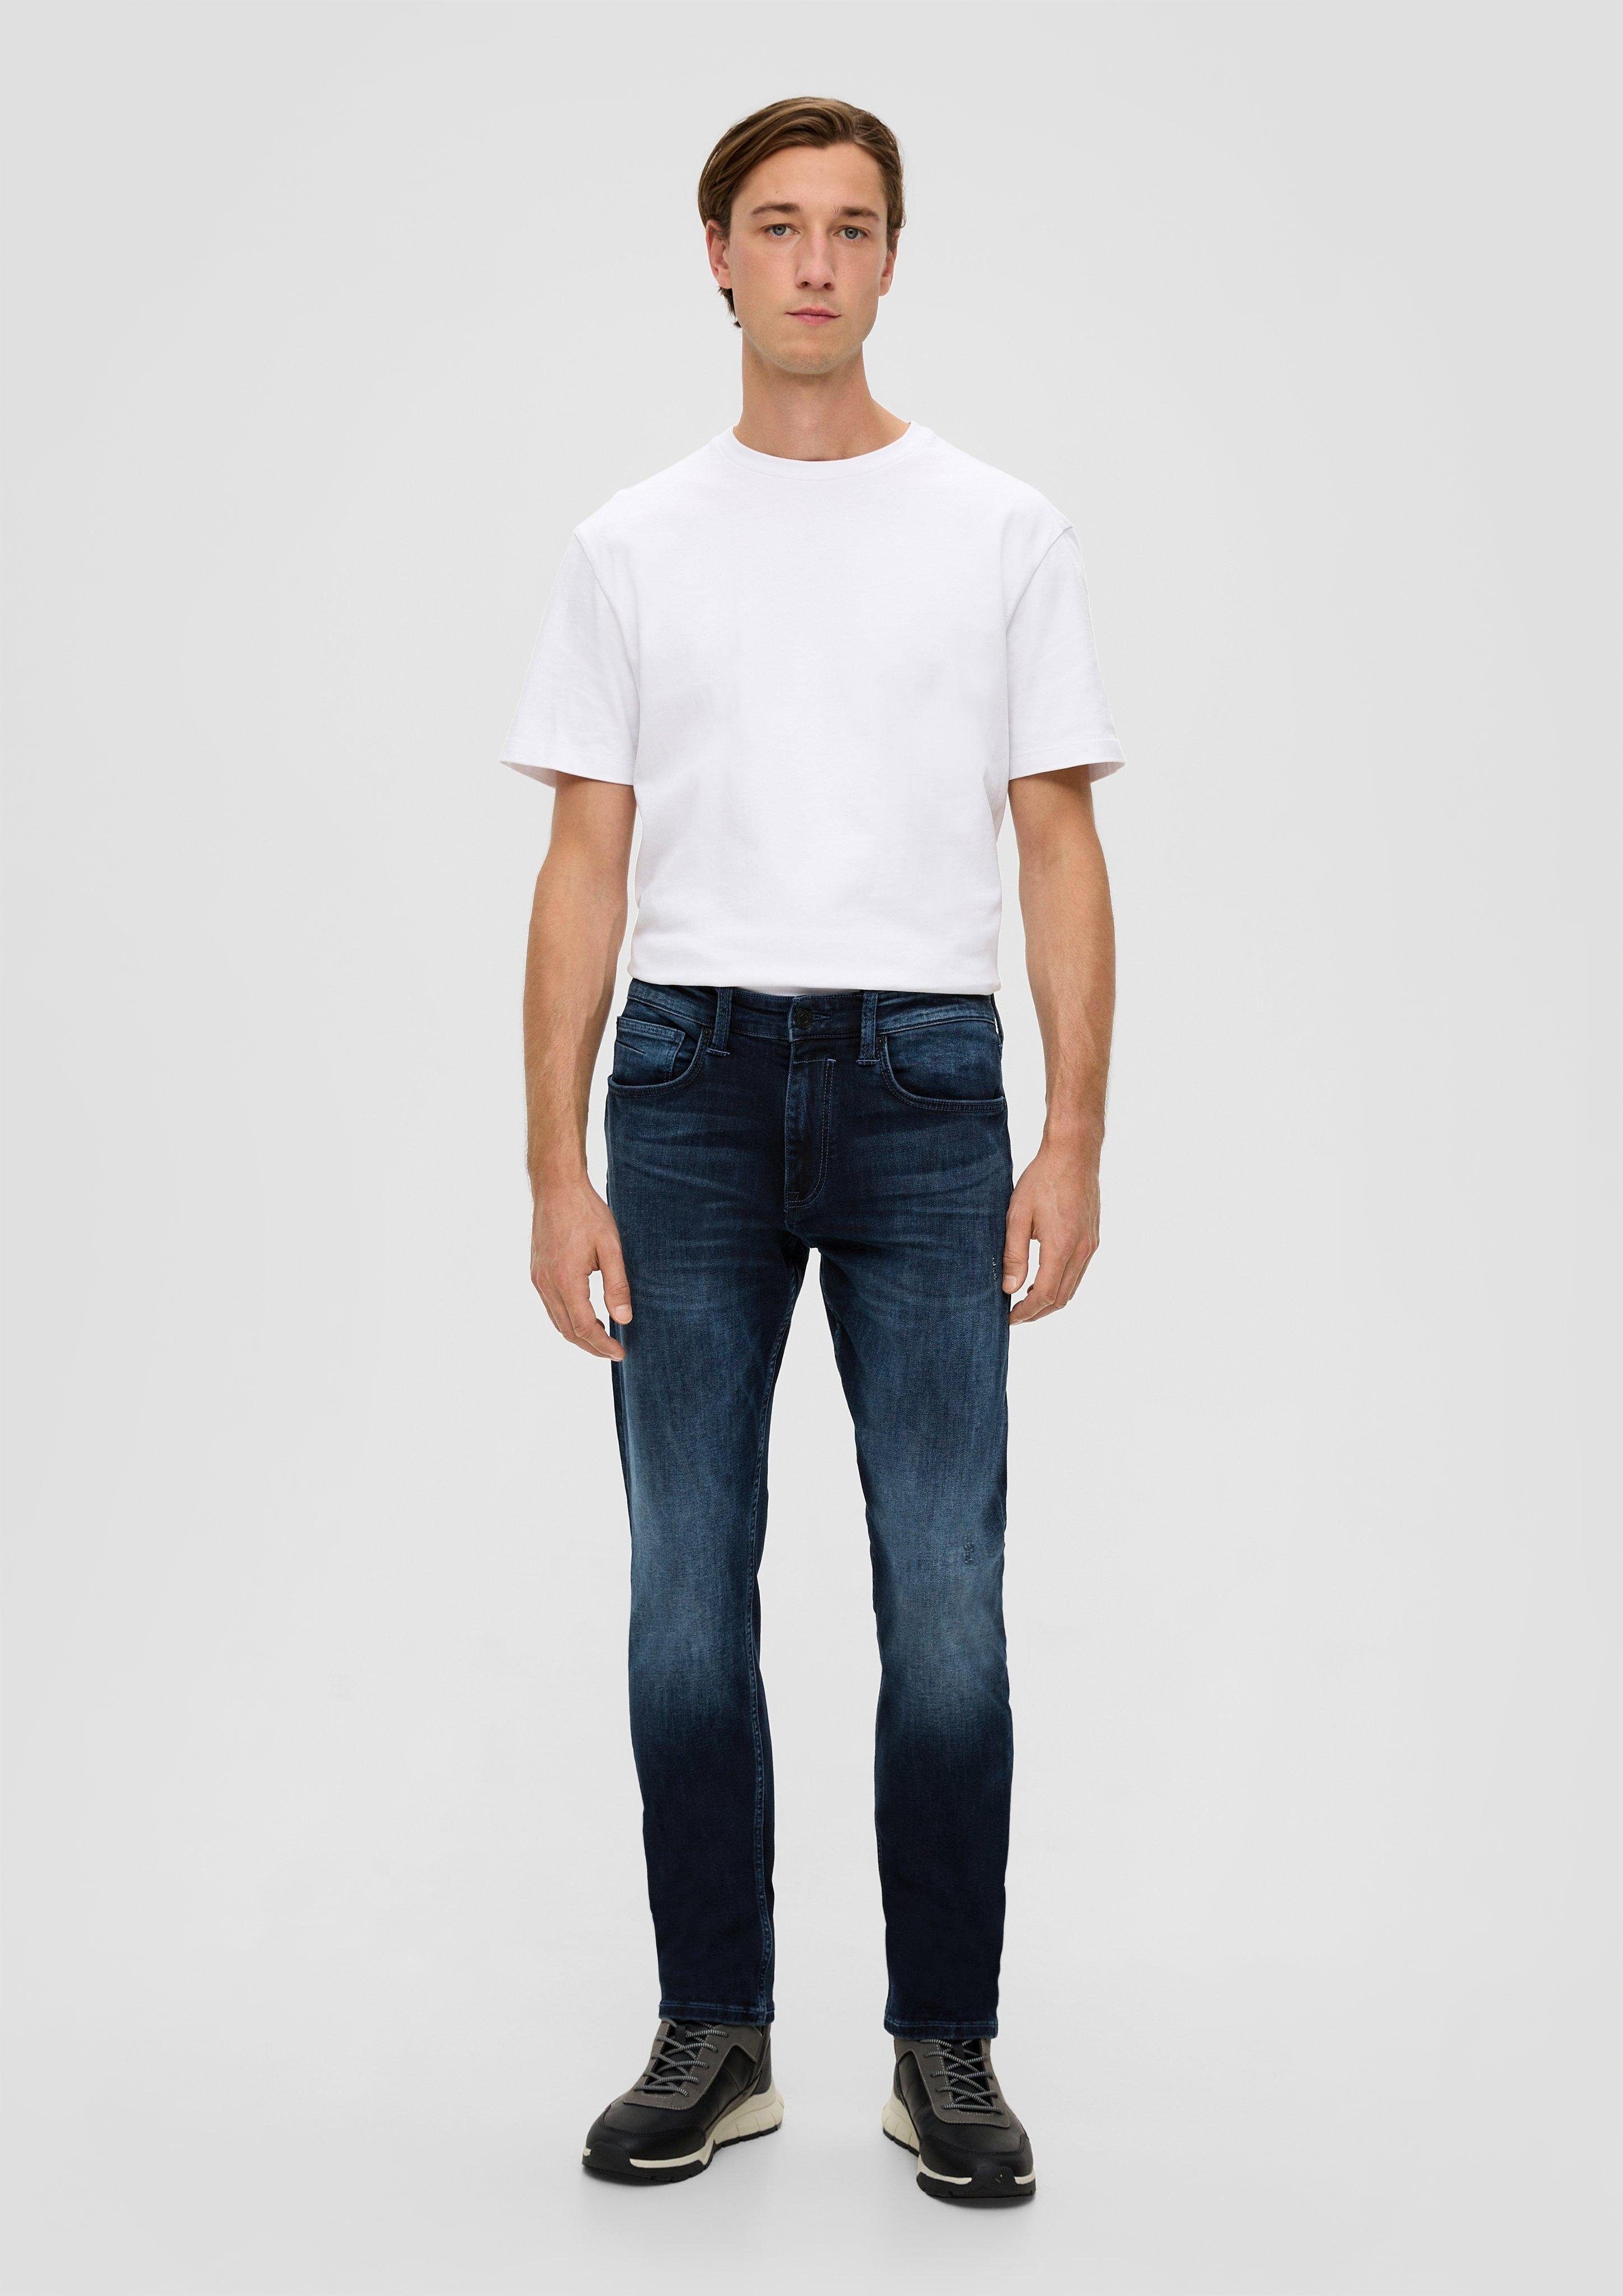 s.Oliver Stoffhose Jeans / Regular Fit / Mid Rise / Tapered Leg / 5-Pocket-Stil Leder-Patch, Waschung tiefblau